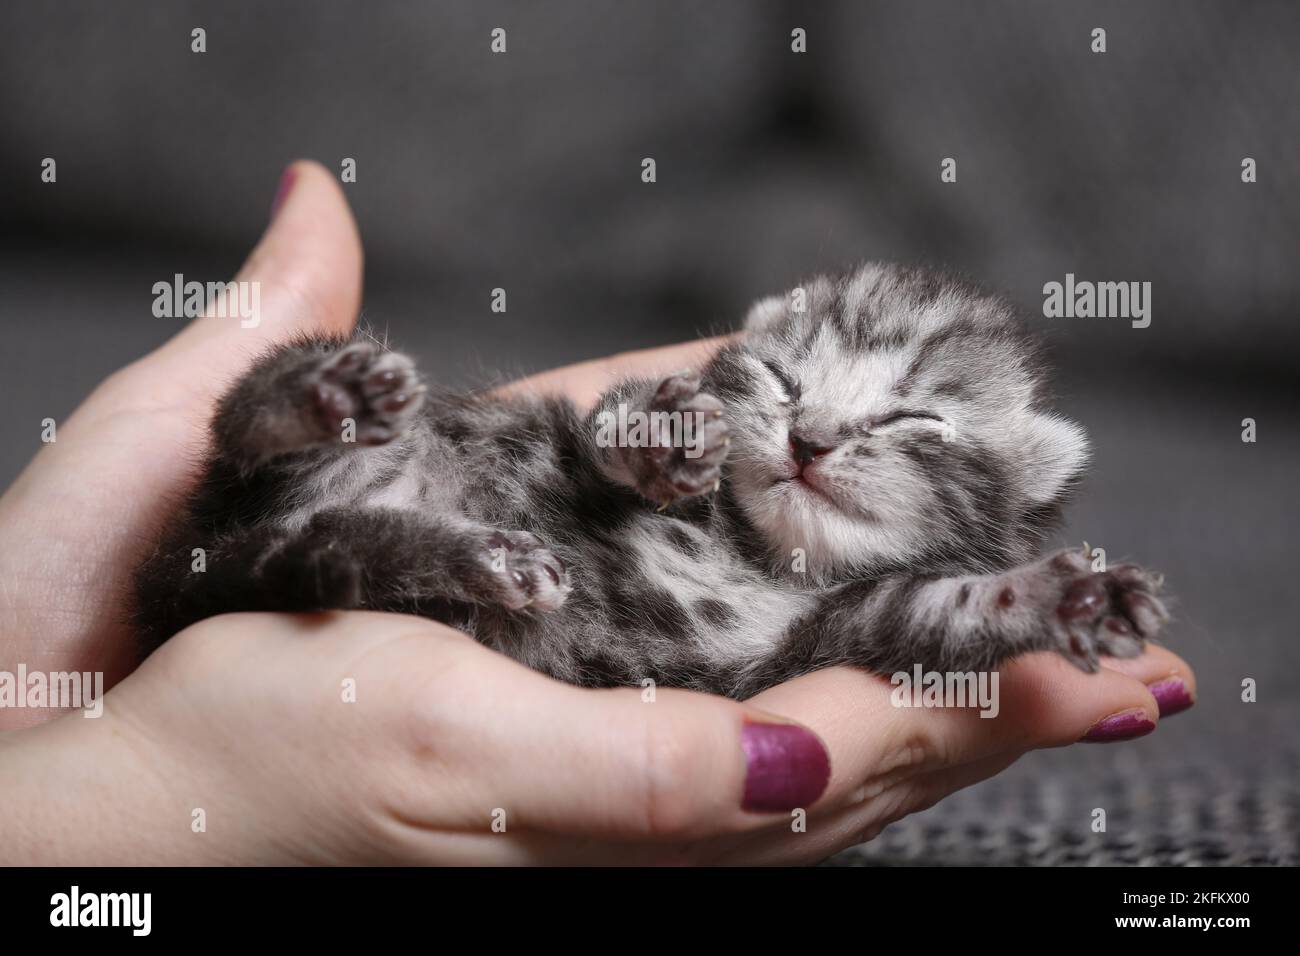 7 days old kitten Stock Photo